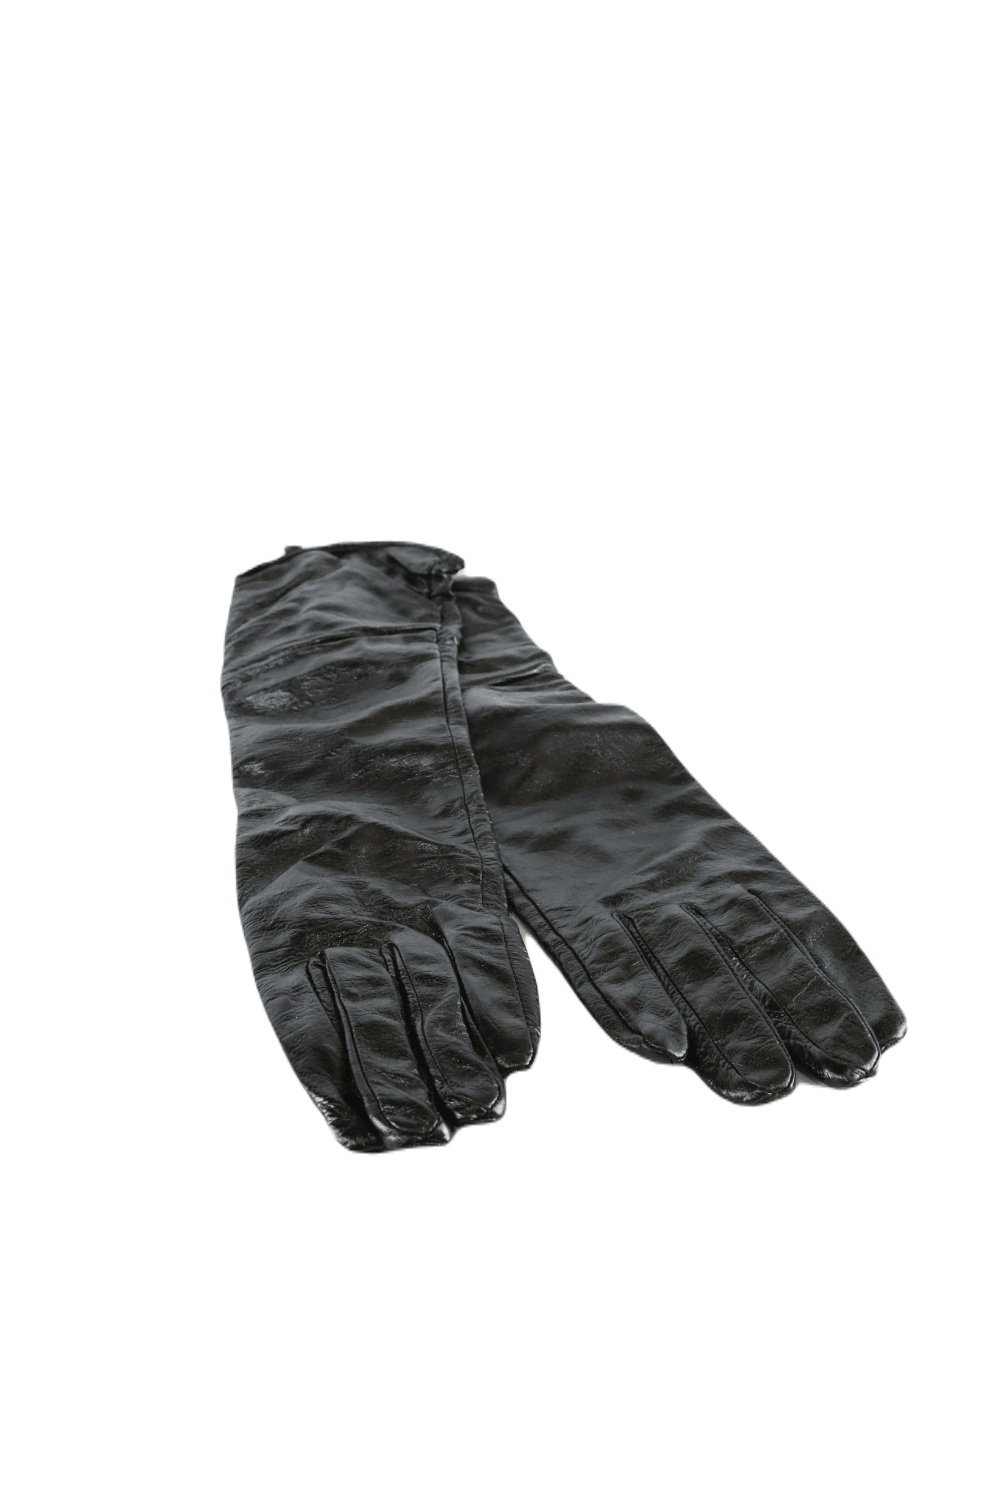 Boutique Black Faux Leather Gloves